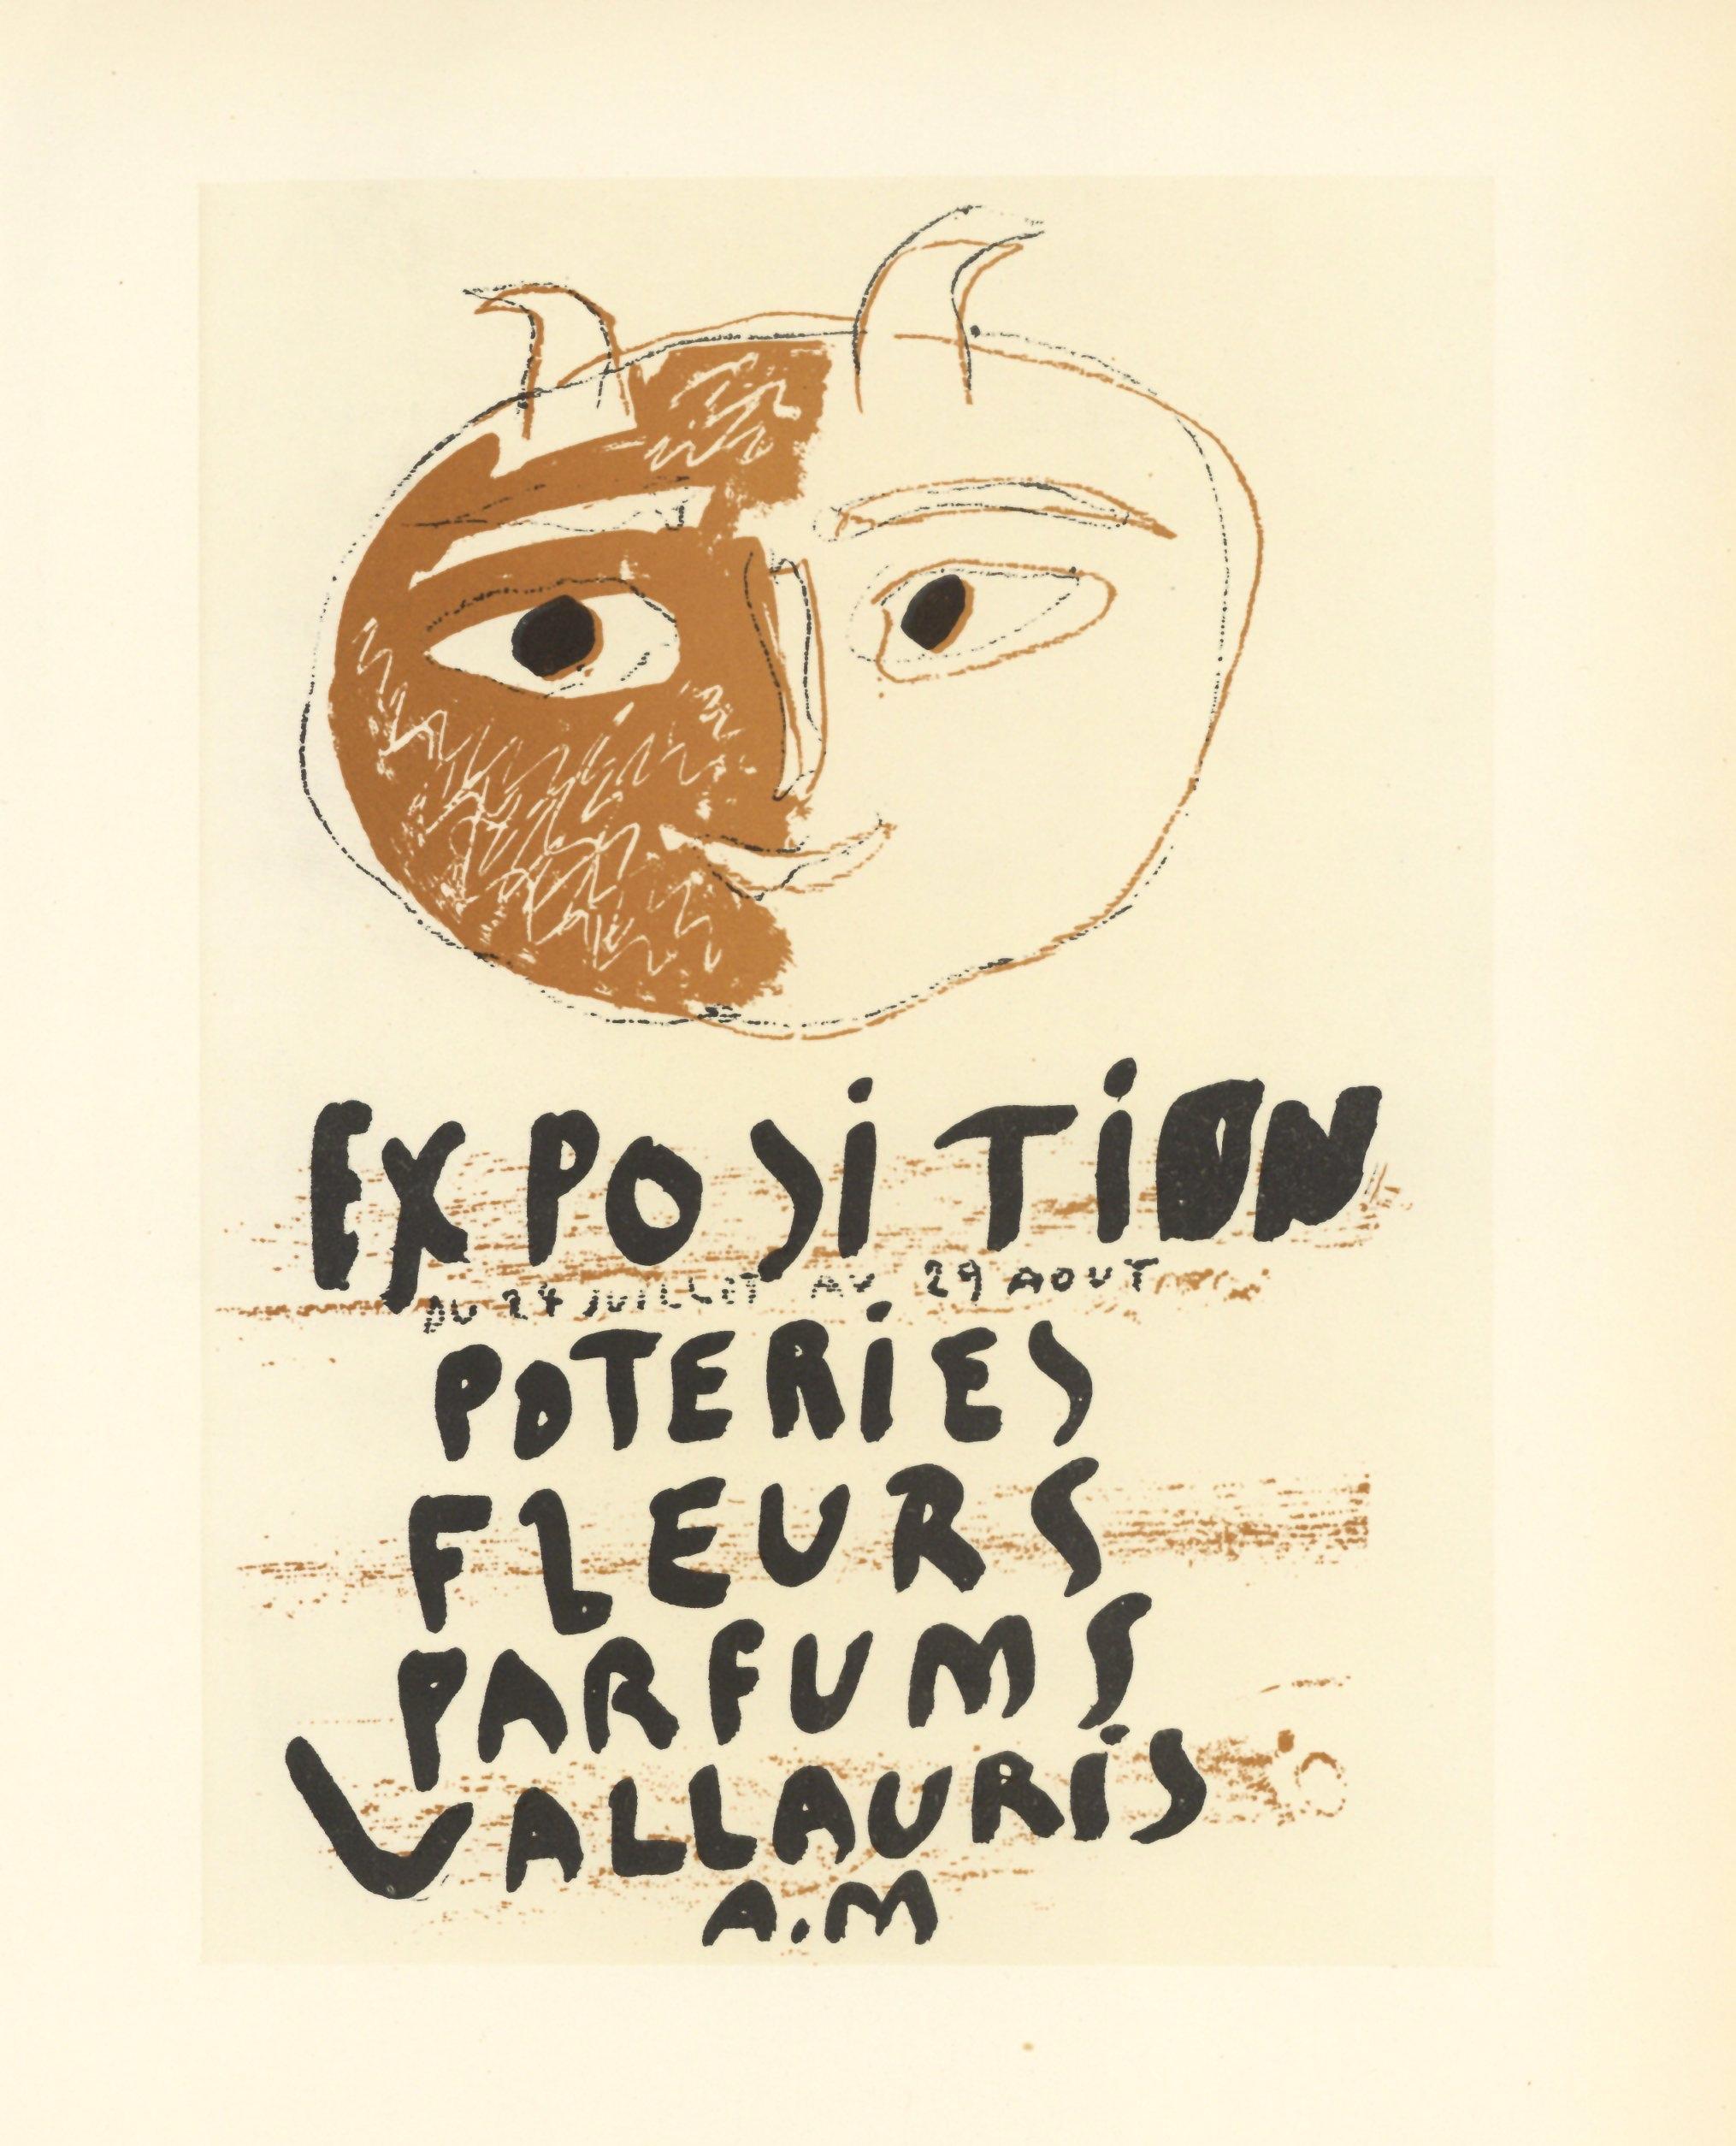 Affiche en lithographie « Exposition Poteries, Fleurs, parfums » - Print de (after) Pablo Picasso